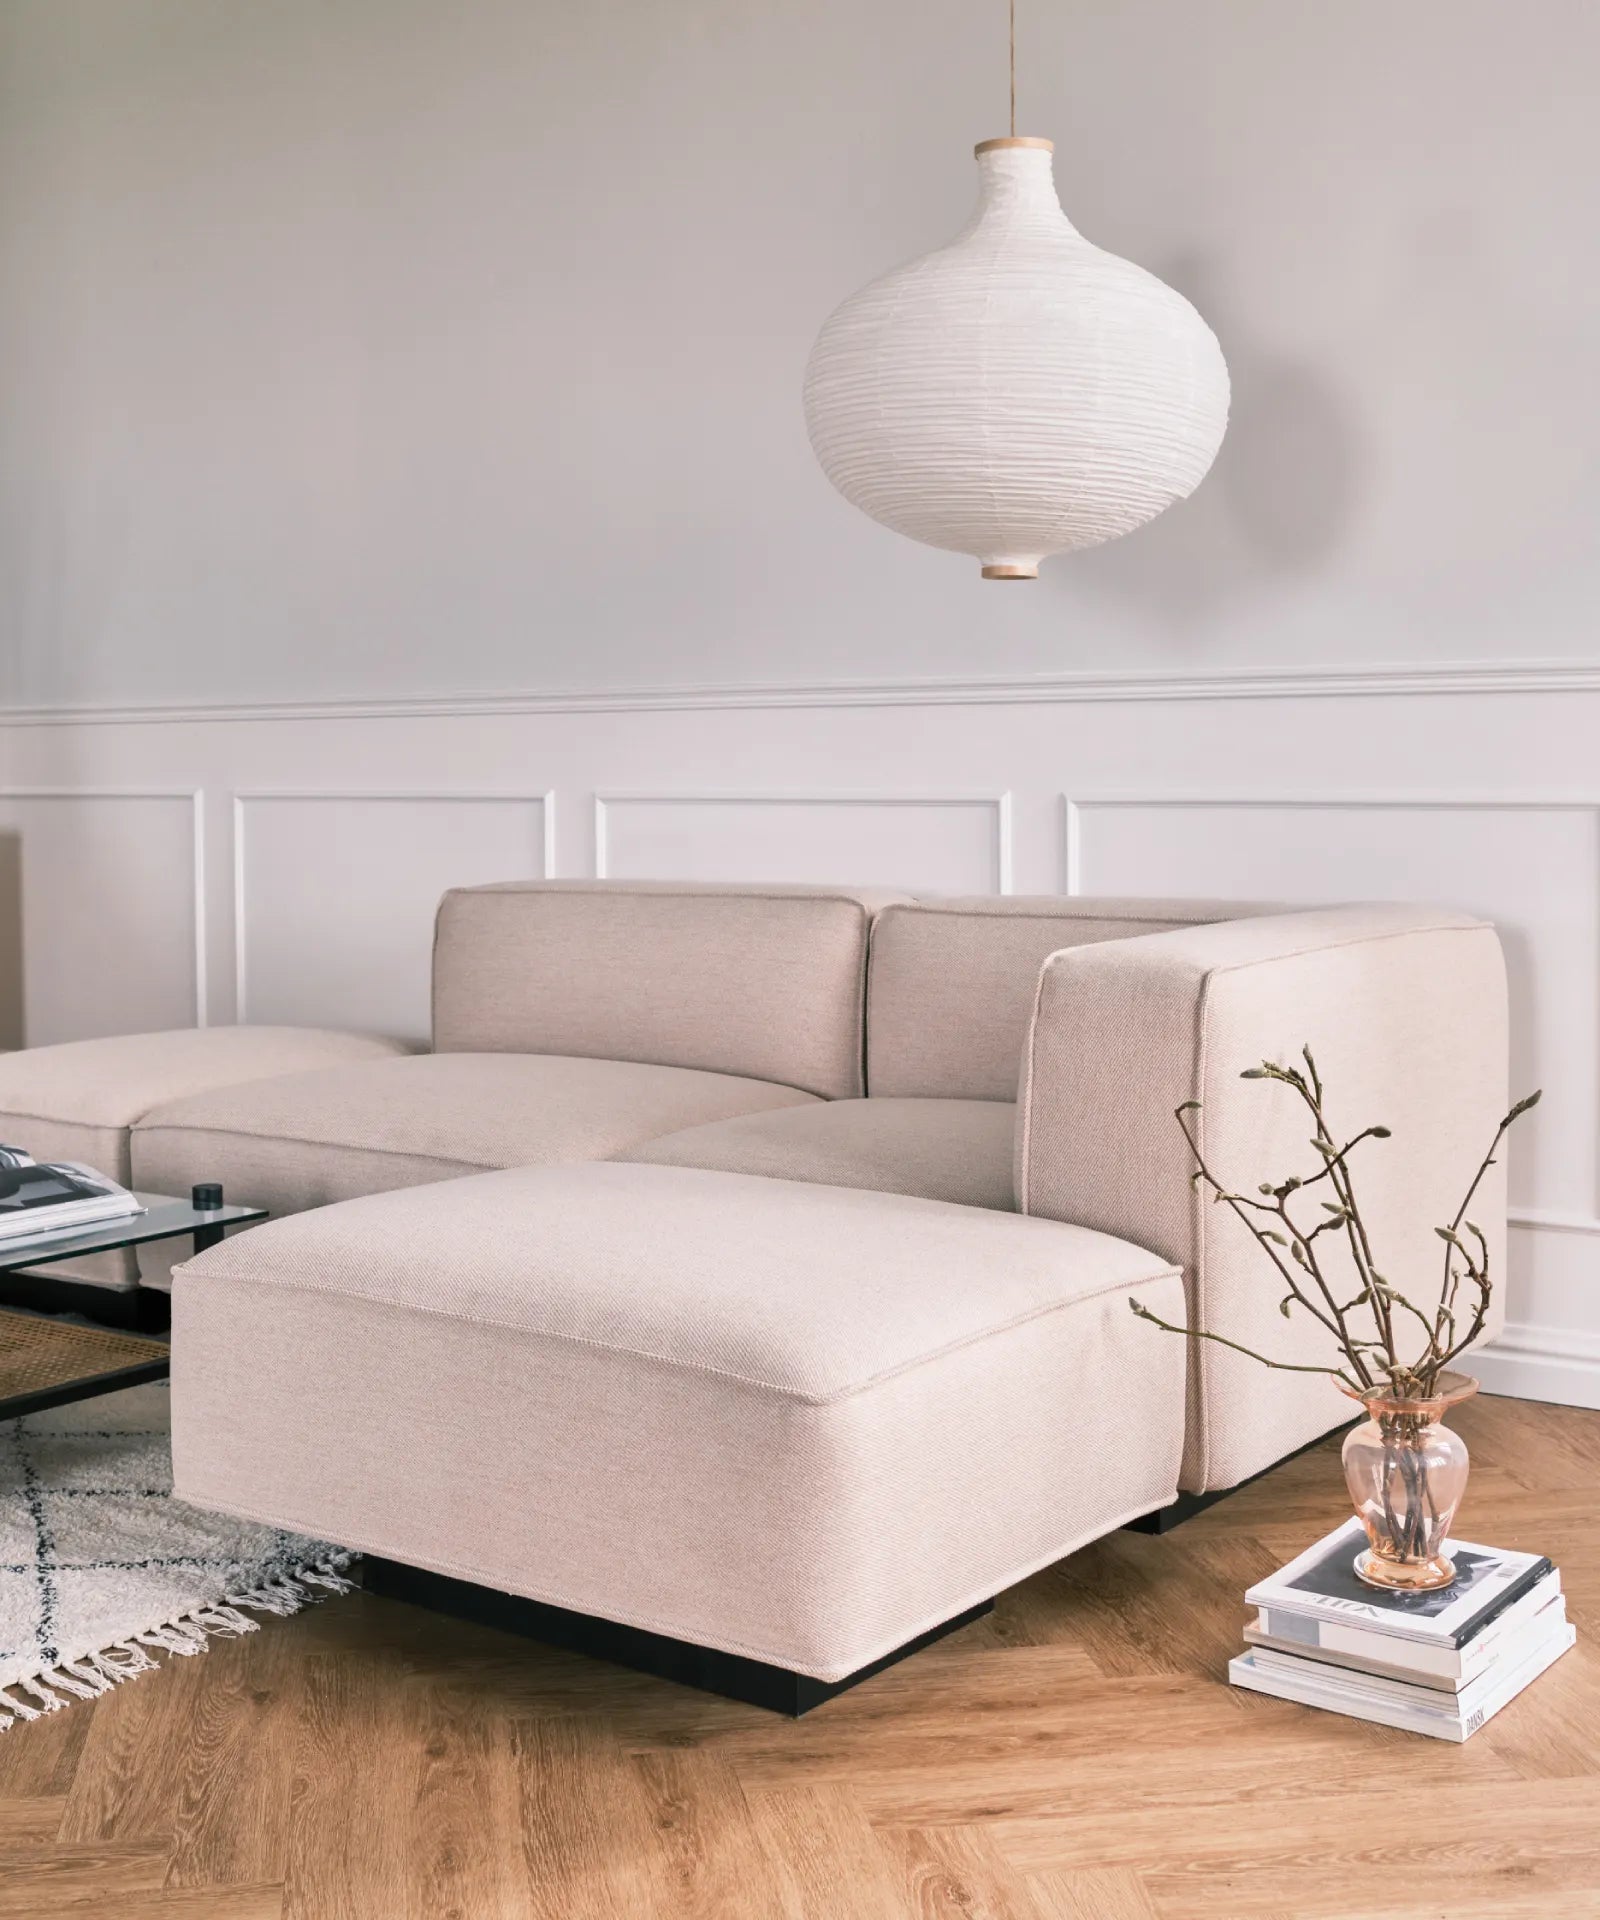 Utopia design modulær sofa i lyst beige stof fra Njordec ligner BASECAMP og Develius sofa